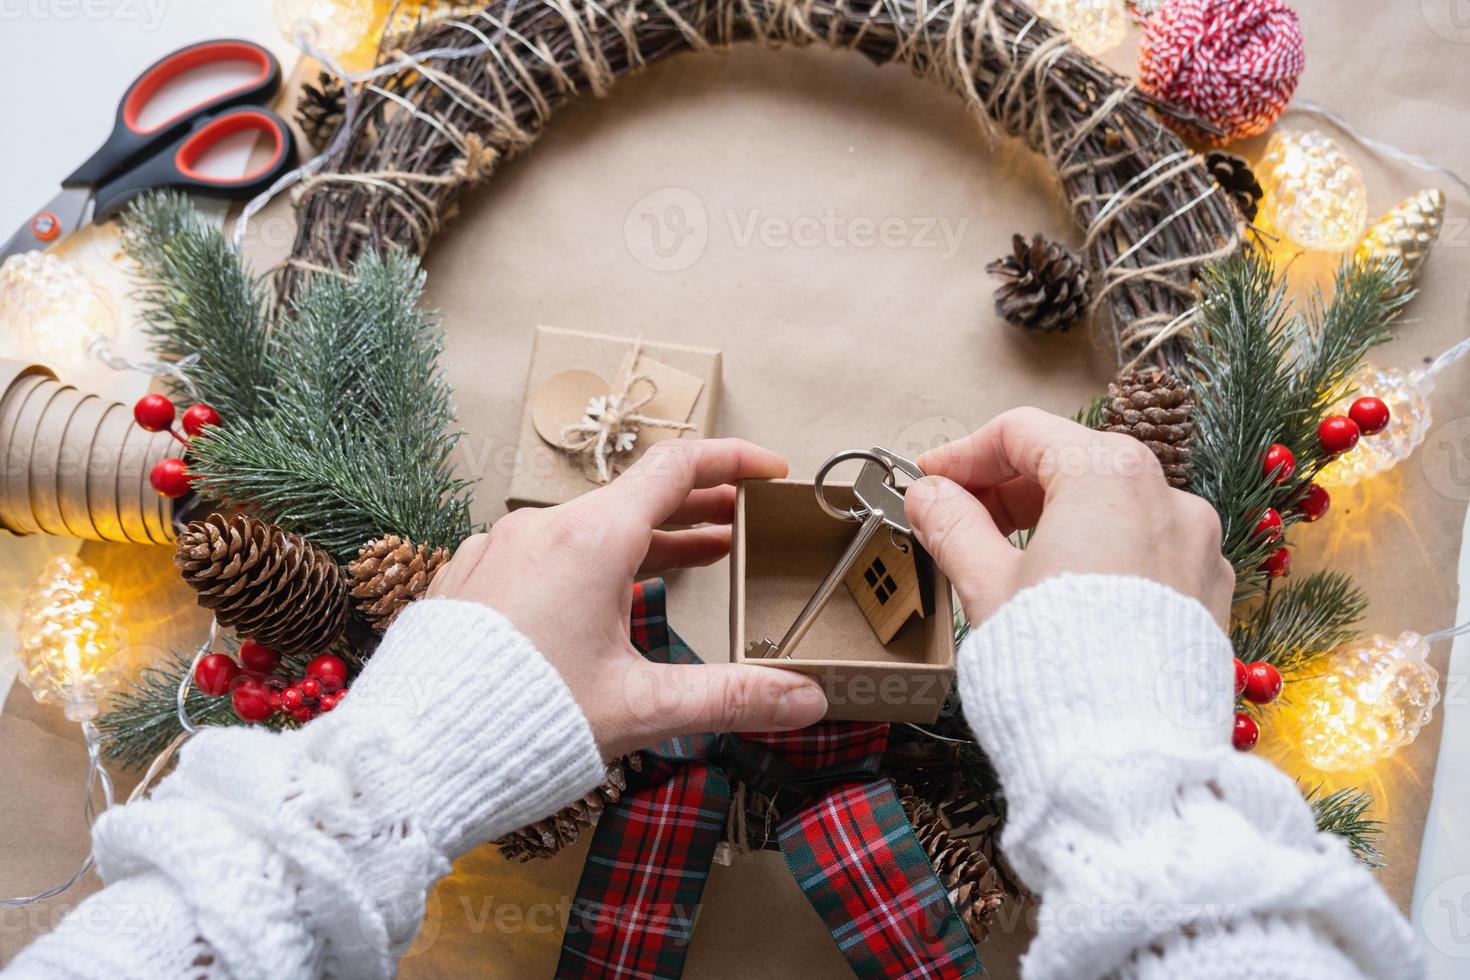 nyckel till hus med Nyckelring på mysigt Hem i gåva låda med jul dekor förpackning. packa närvarande för ny år, jul. byggnad, projekt, rör på sig till ny hus, inteckning, hyra, inköp verklig egendom foto